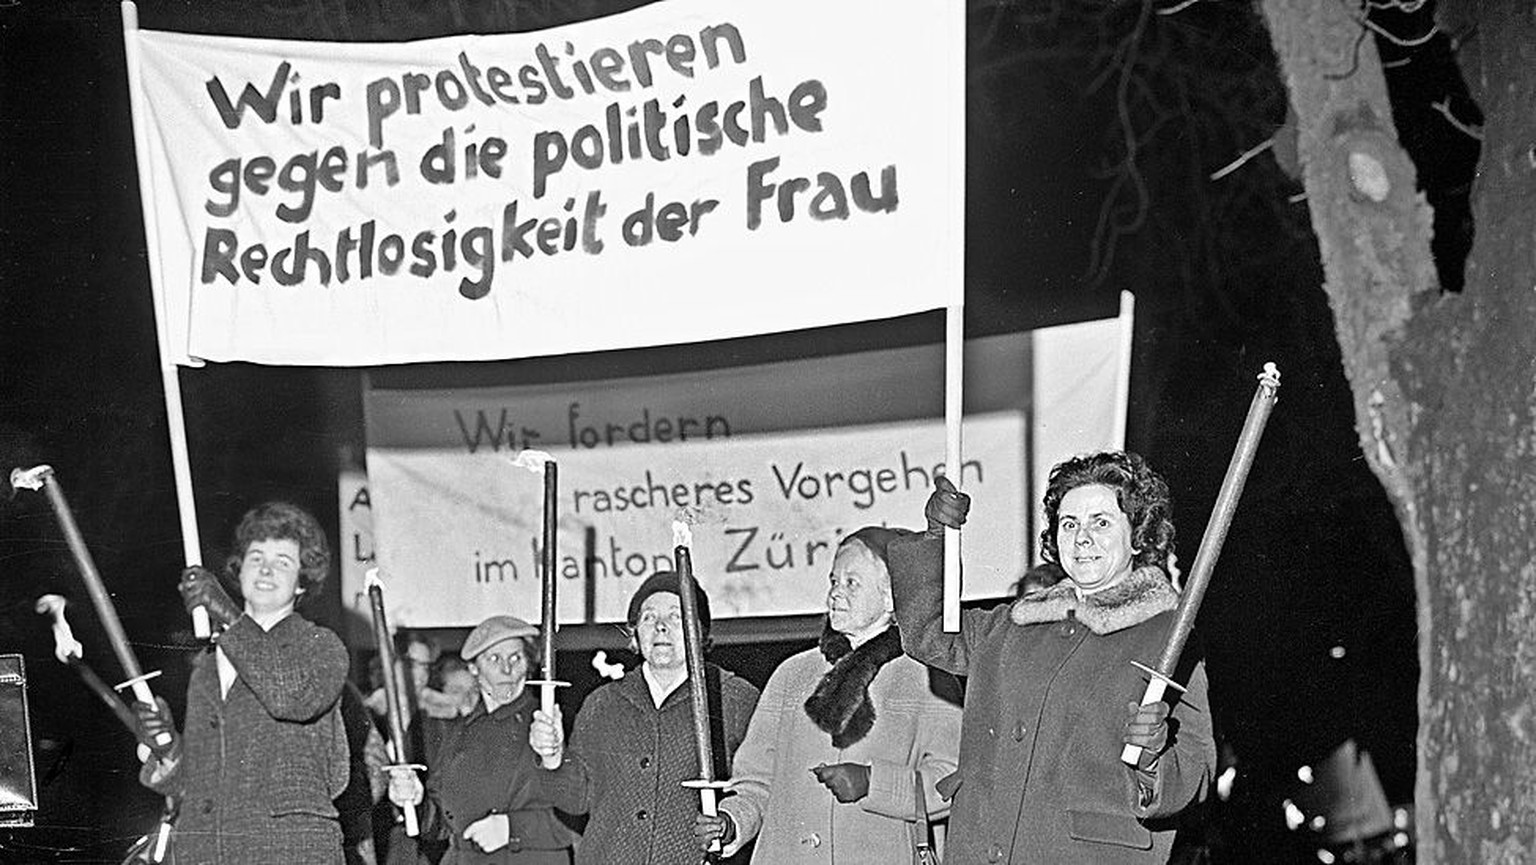 Fackelmarsch am 1. Februar 1969 in Zürich zum Gedenken an die zehn Jahre zuvor verlorene Abstimmung zur Einführung des Frauenstimmrechts. 